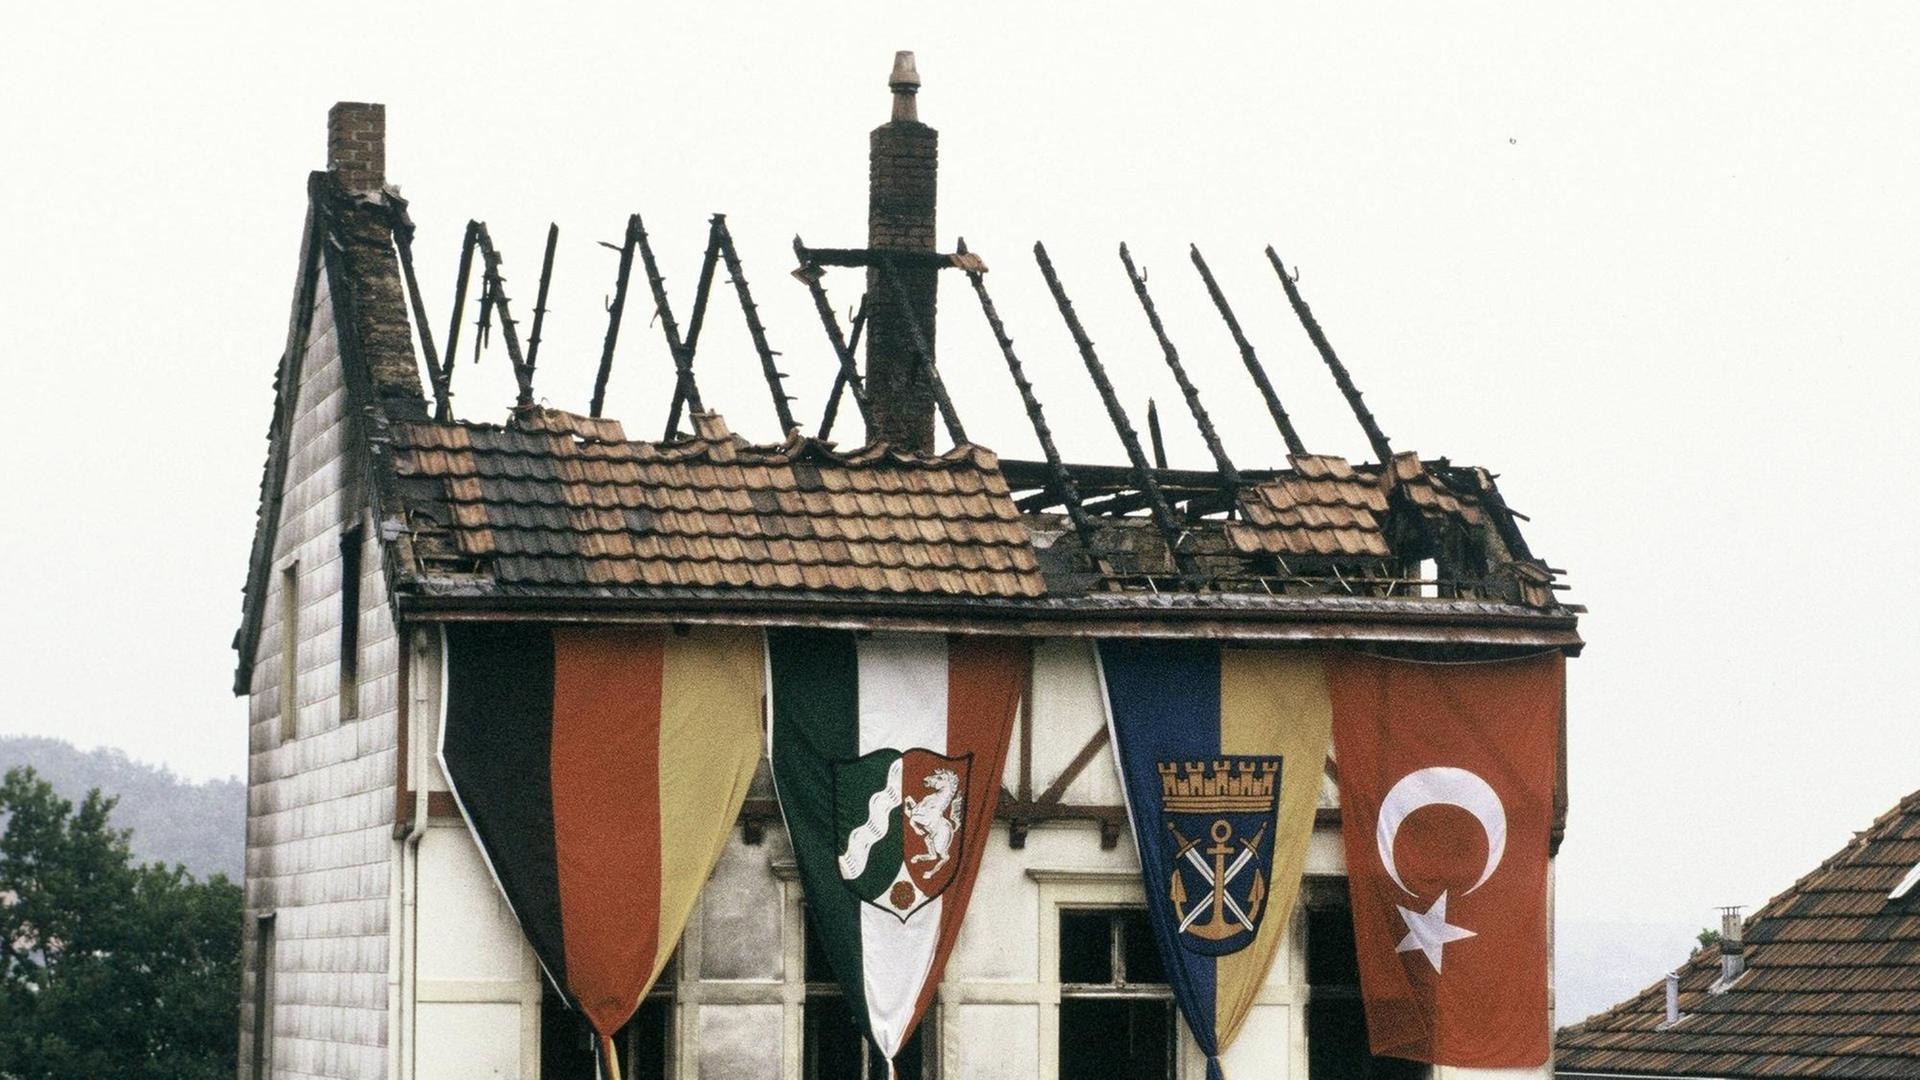 Solingen - Zentrale Gedenkveranstaltung zu rassistischem Brandanschlag vor 30 Jahren mit Bundespräsident Steinmeier